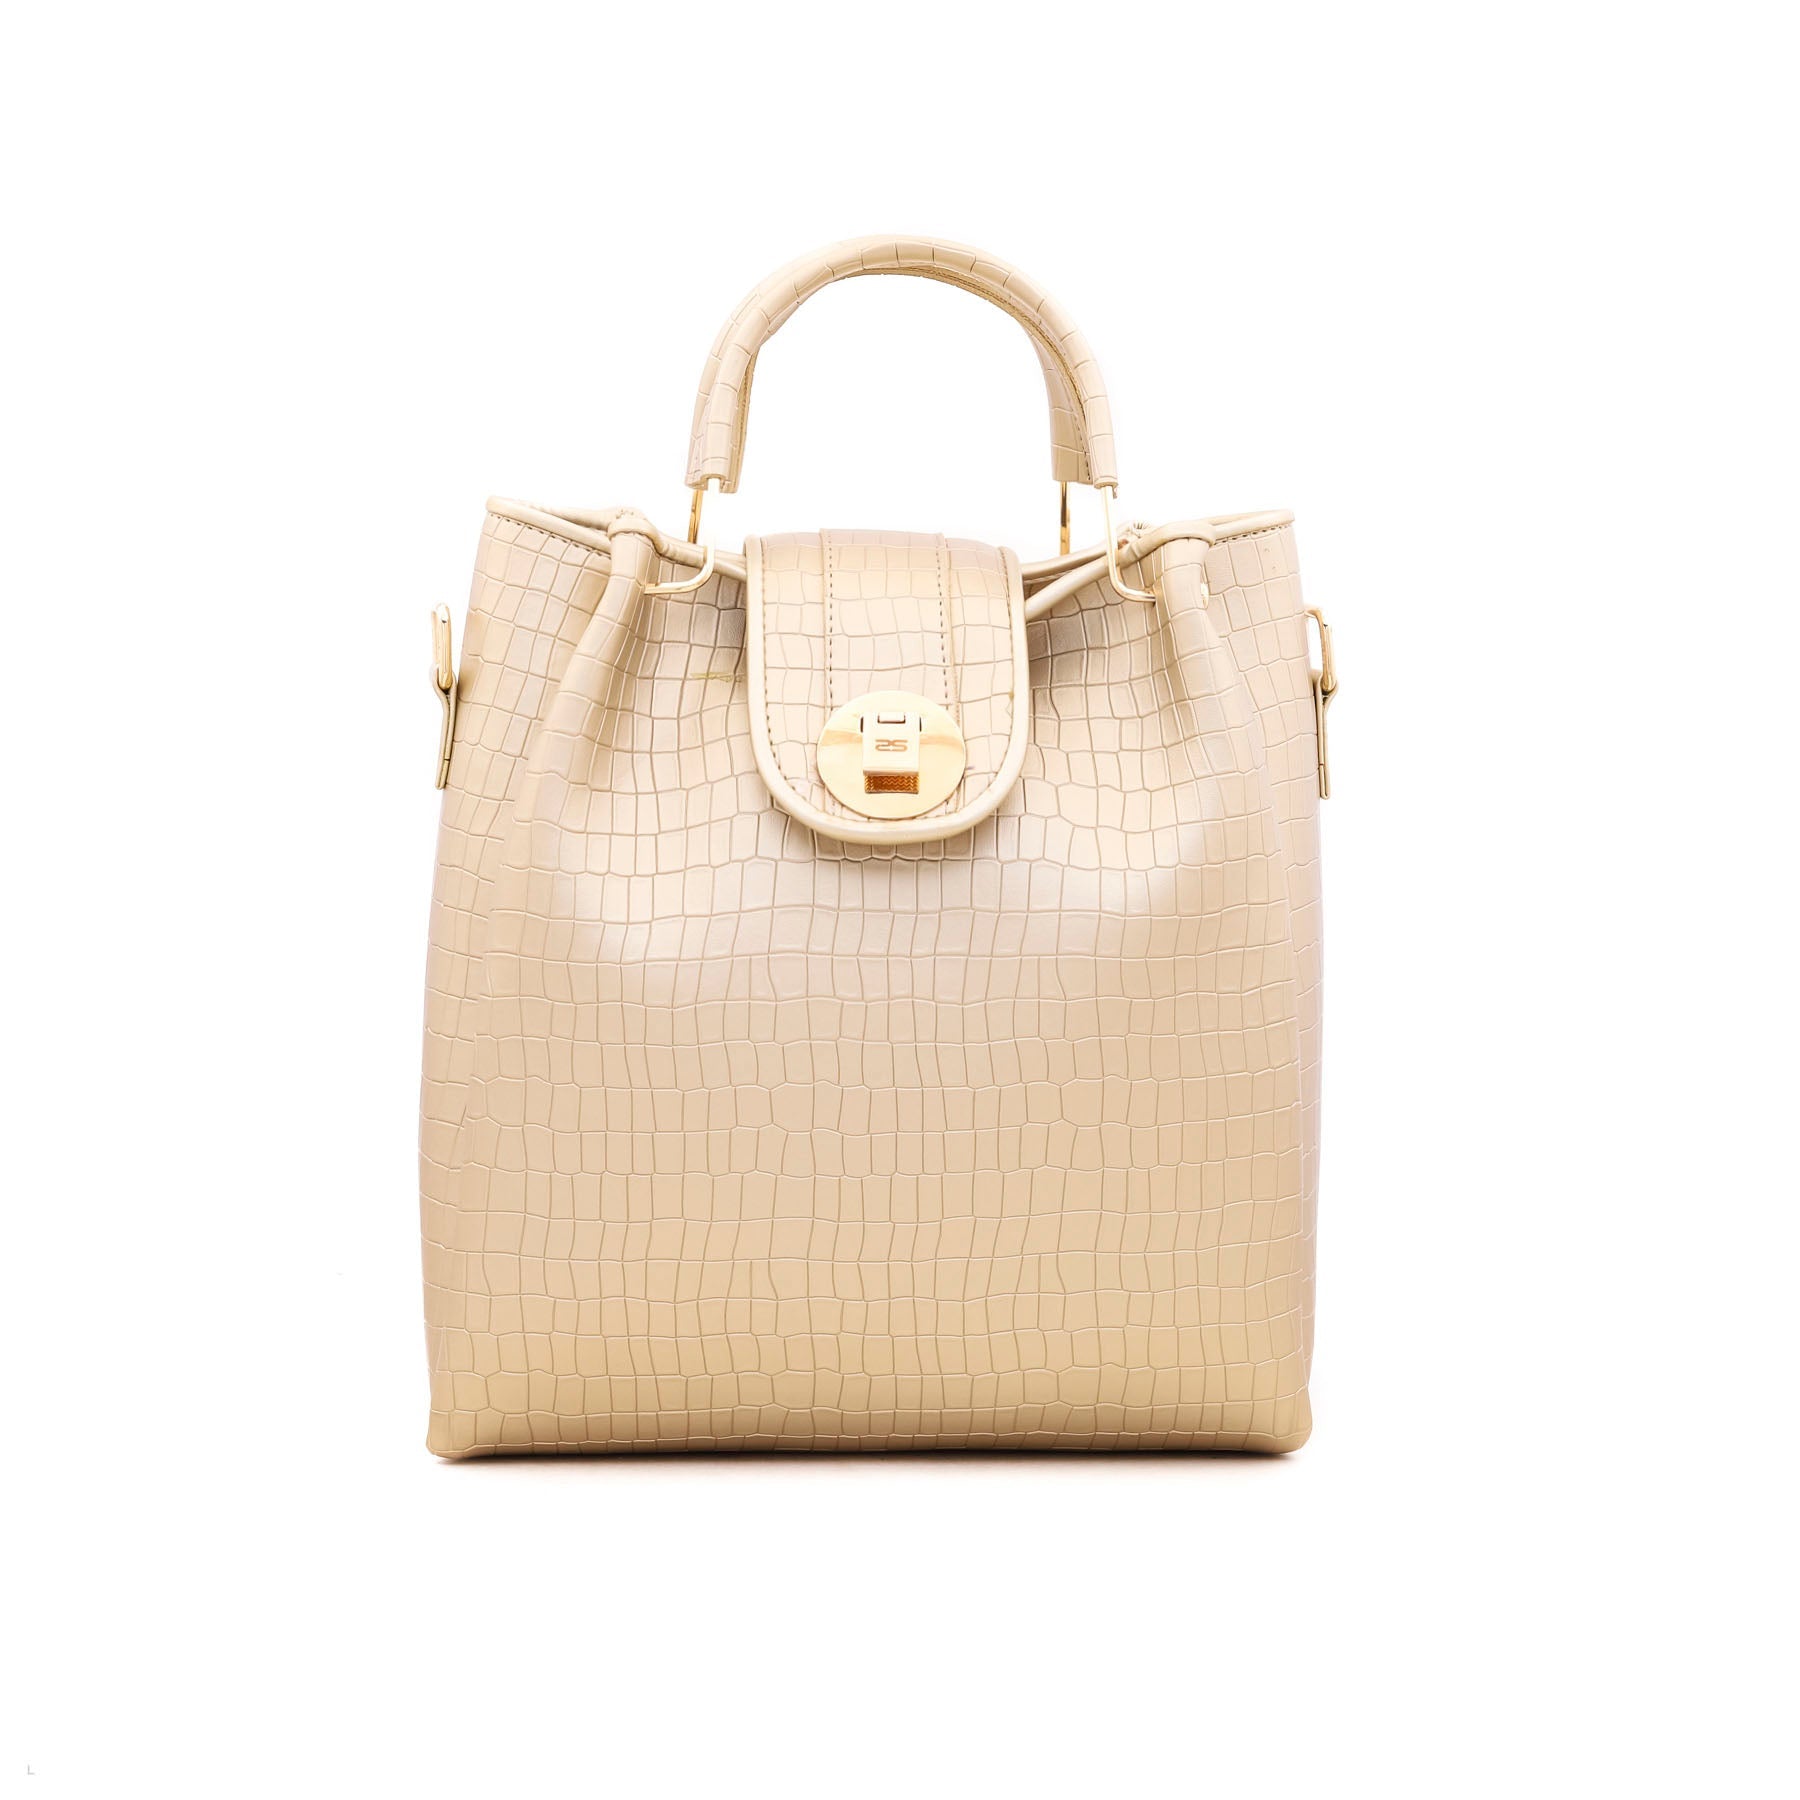 Golden Formal Hand Bag P54313